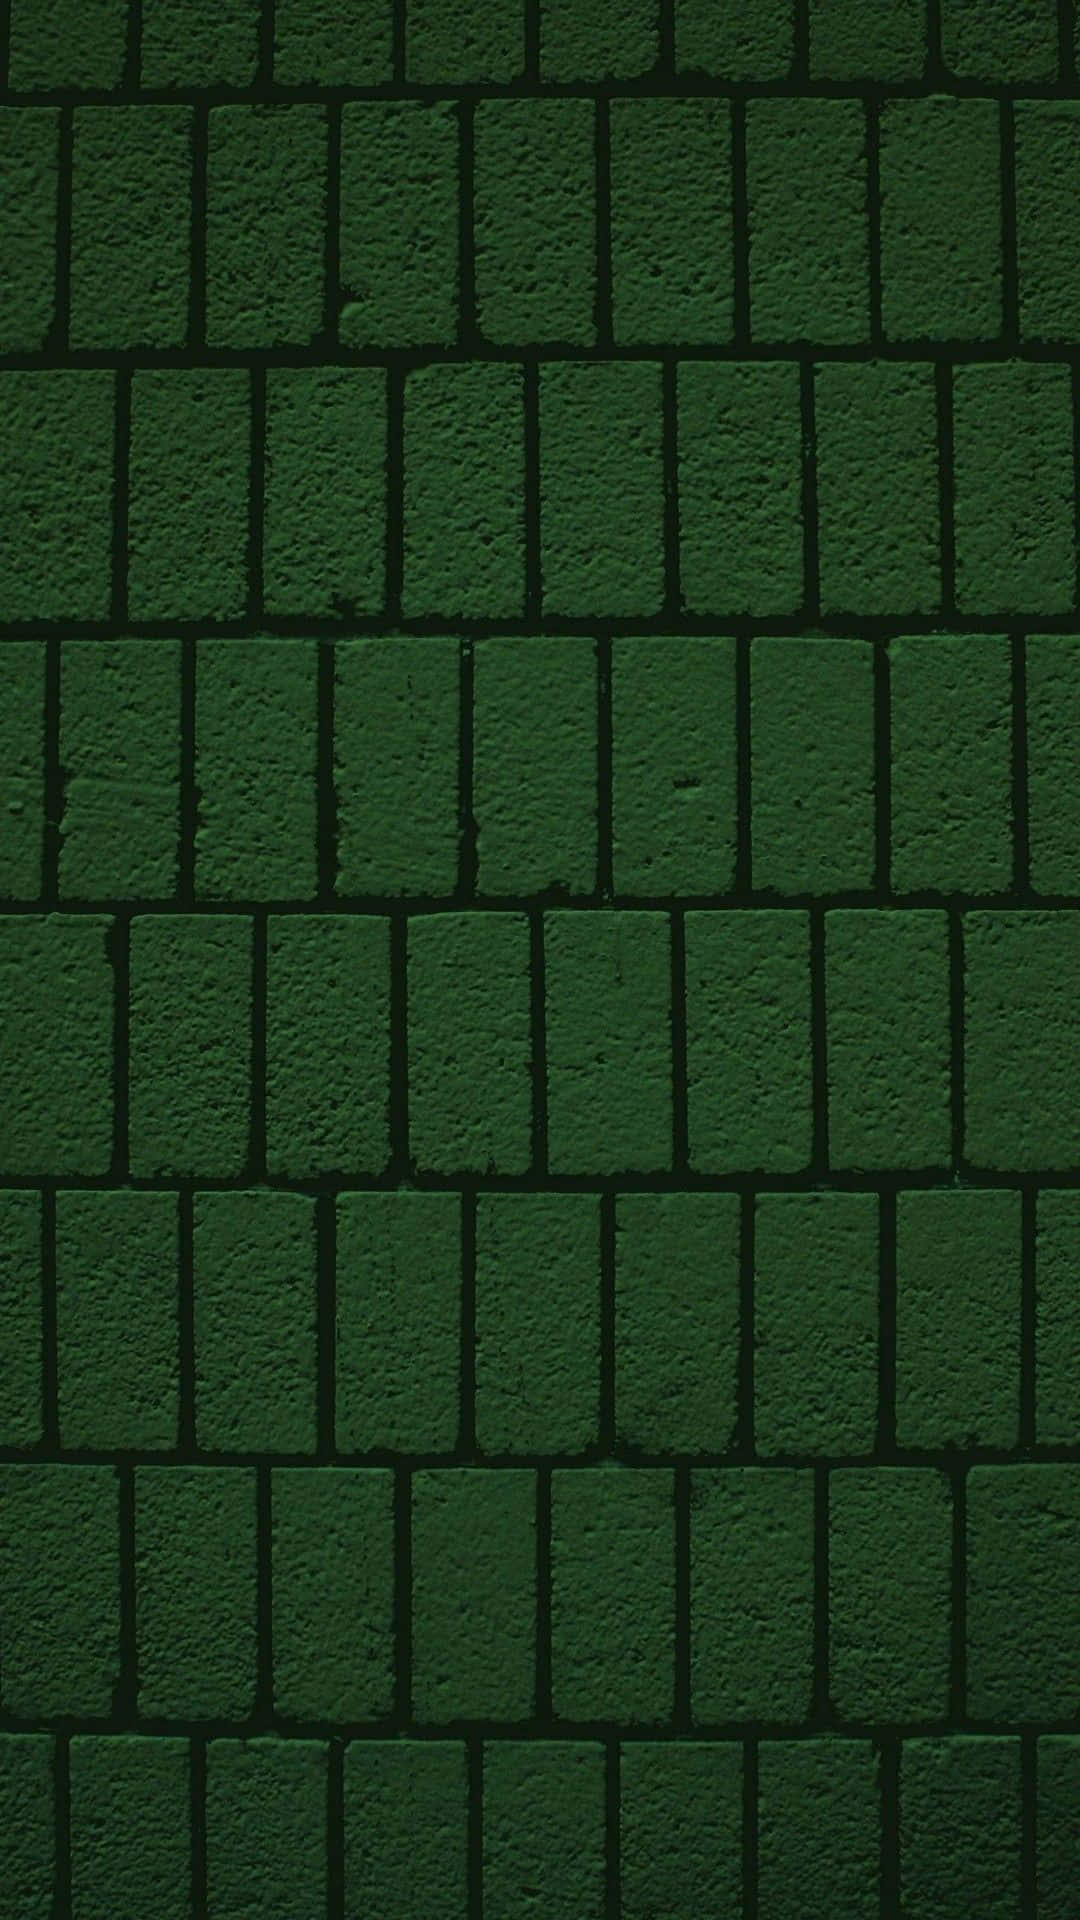 Mørkegrøn Iphone 1080 X 1920 Wallpaper